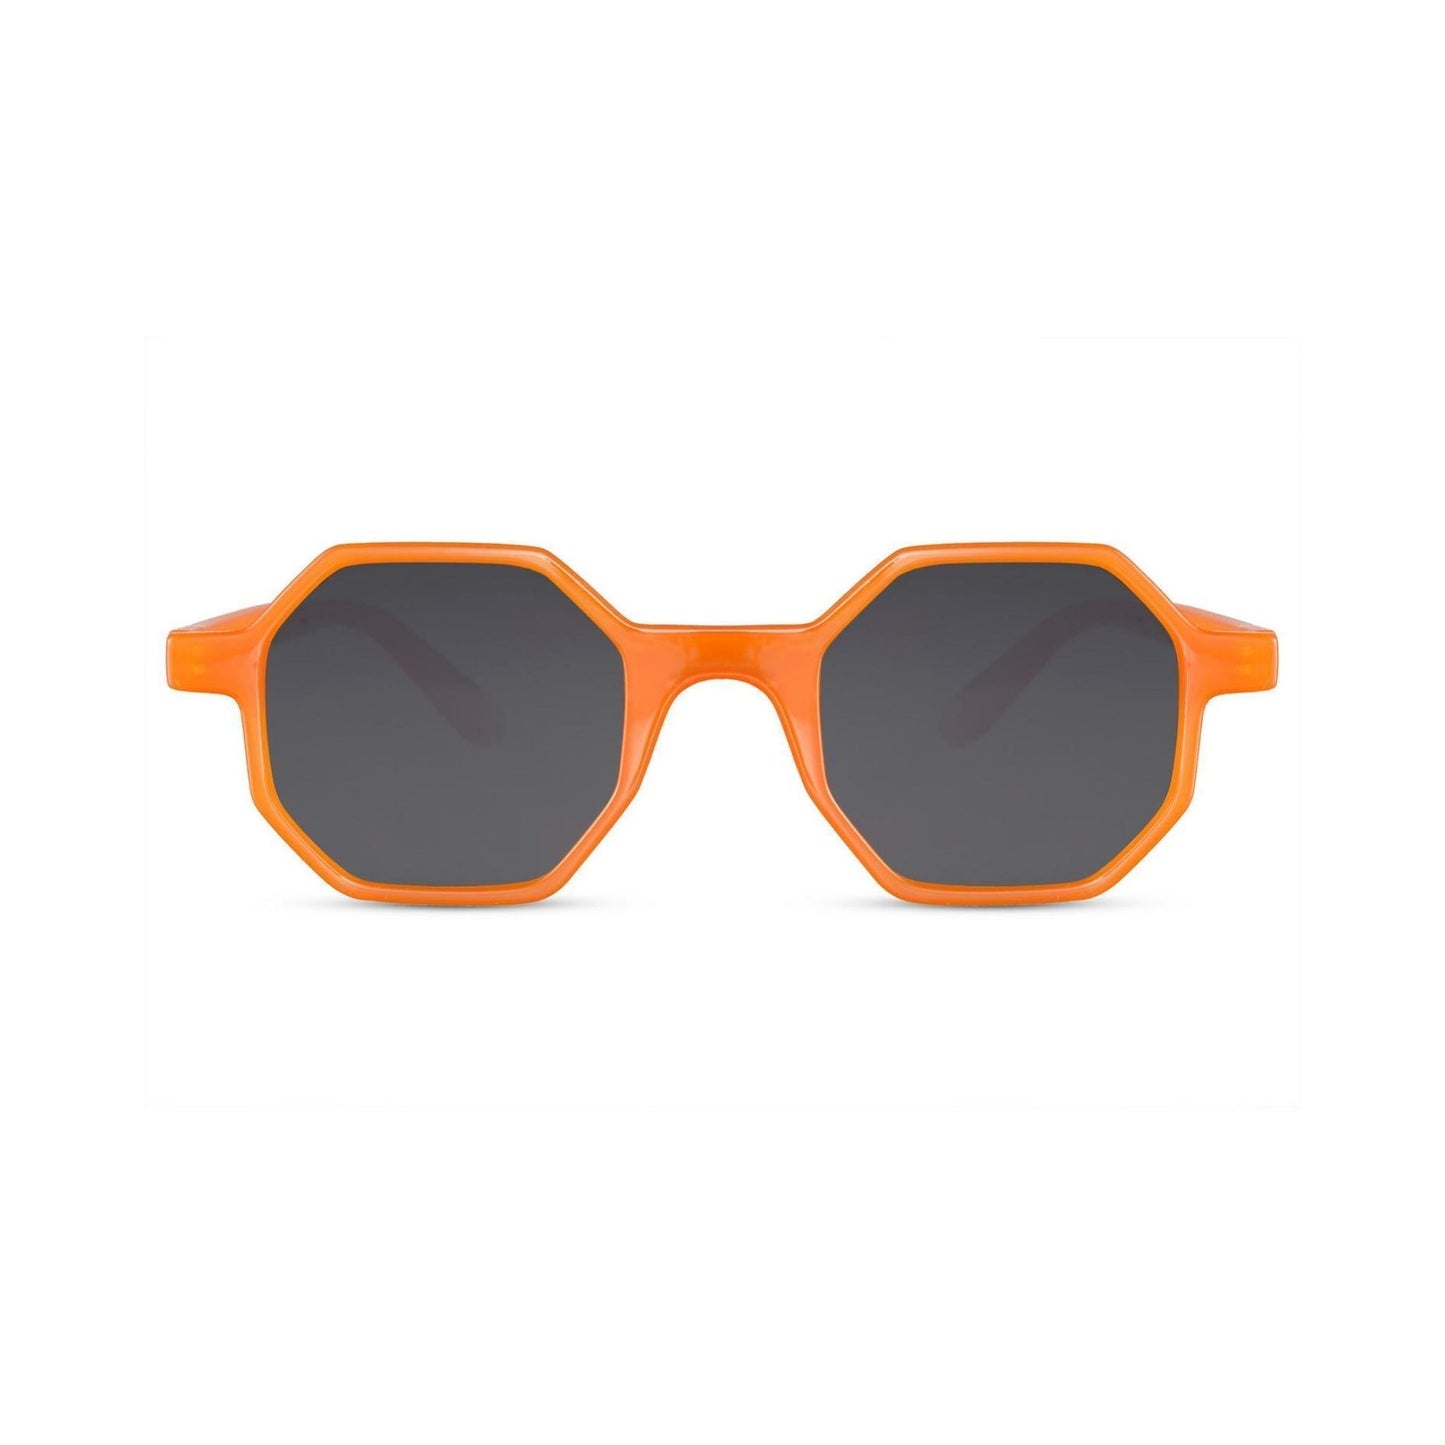 Στρογγυλά Γυαλιά Ηλίου Boheme της Exposure Sunglasses με προστασία UV400 σε πορτοκαλί χρώμα σκελετού και μαύρο φακό.